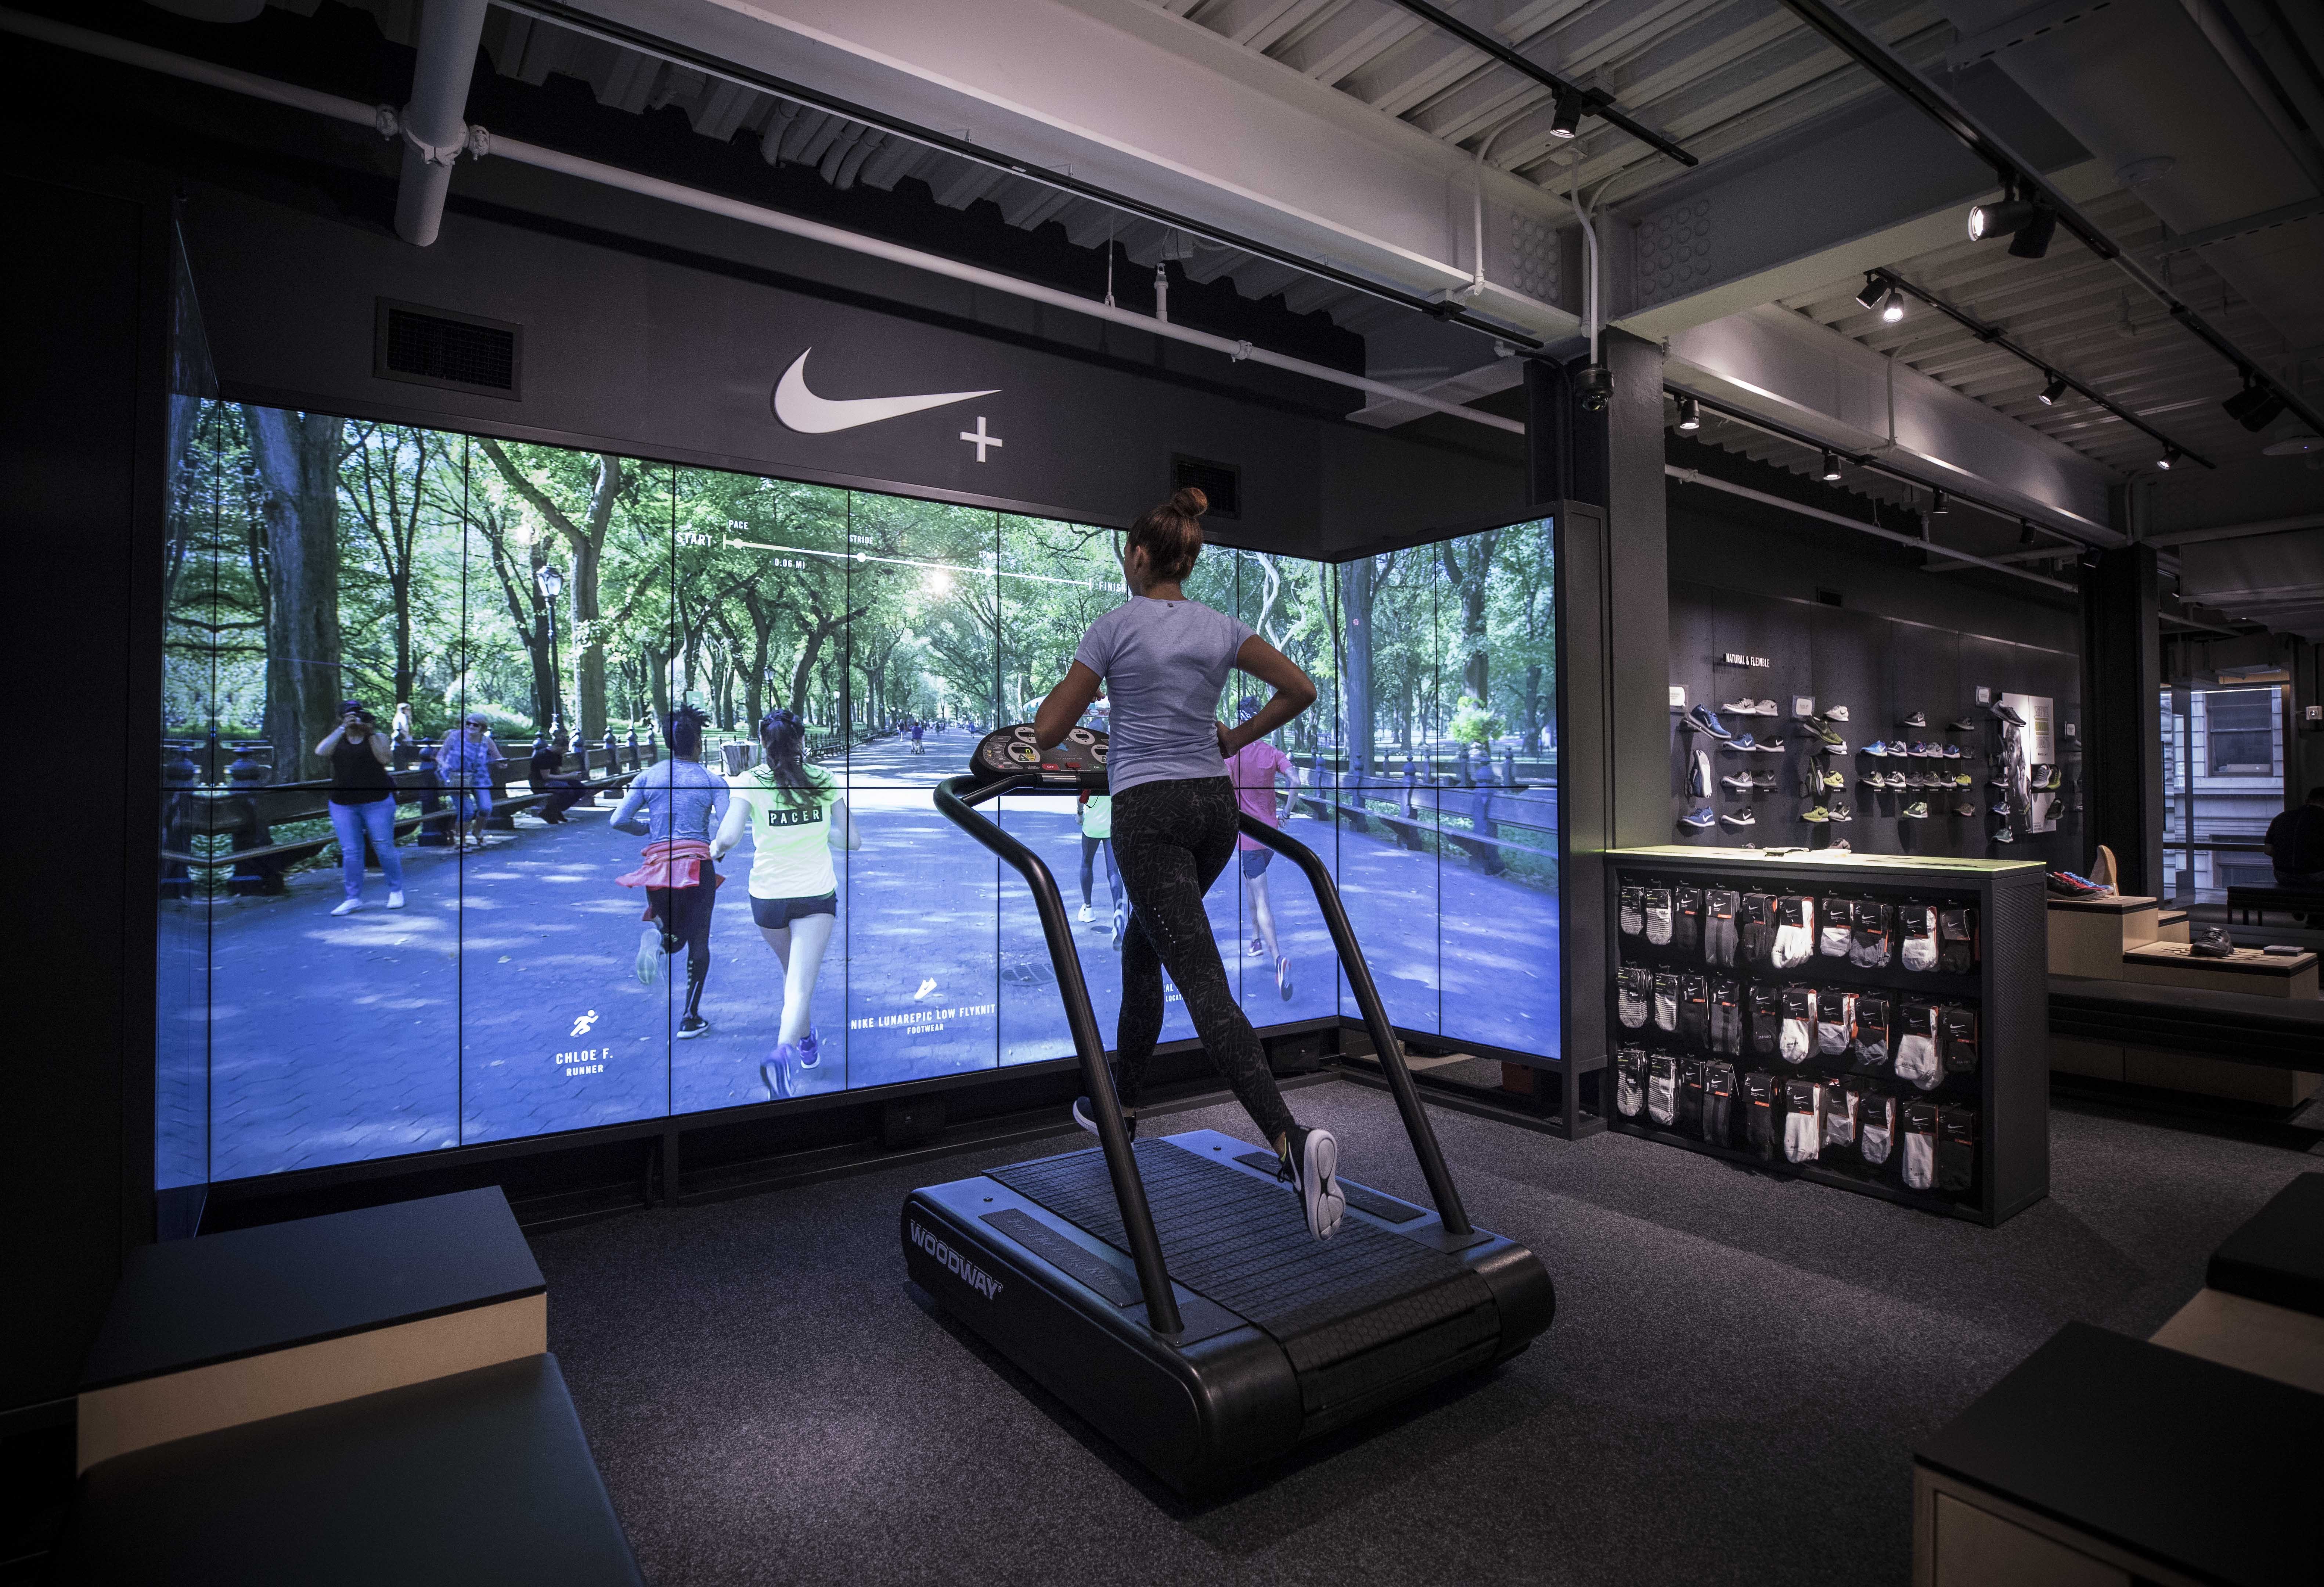 Future sports. Nike Soho. Интерактивный спортзал. Виртуальный тренажер. Новейшие технологии в спорте.